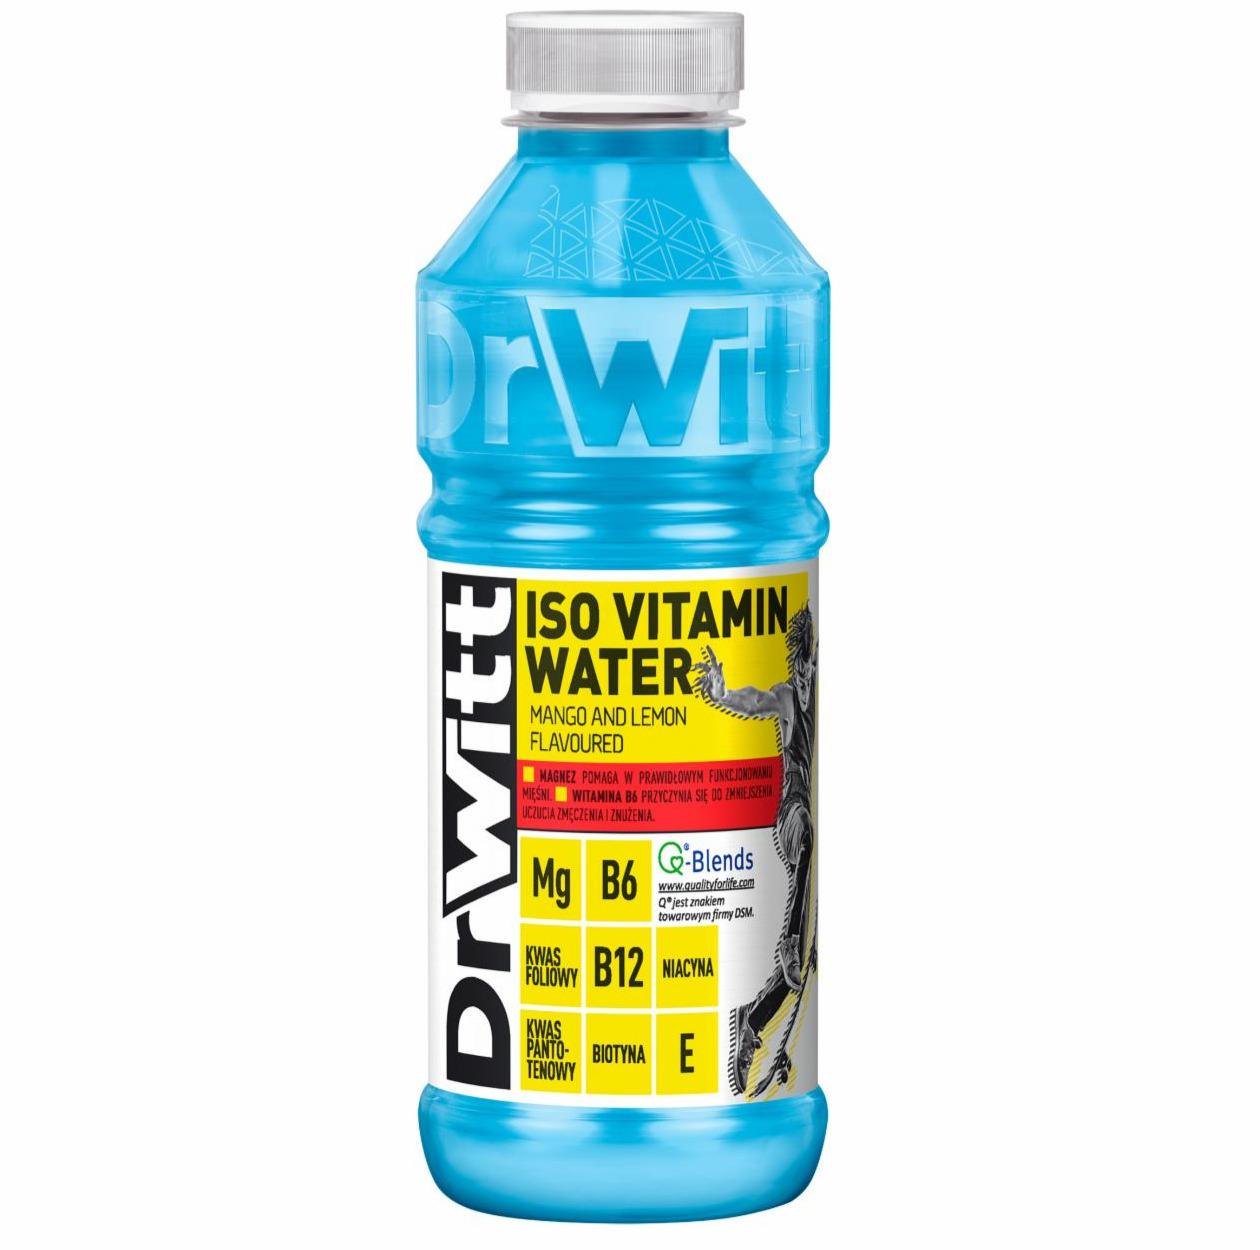 Zdjęcia - Iso Vitamin Water o smaku mango i cytryny DrWitt